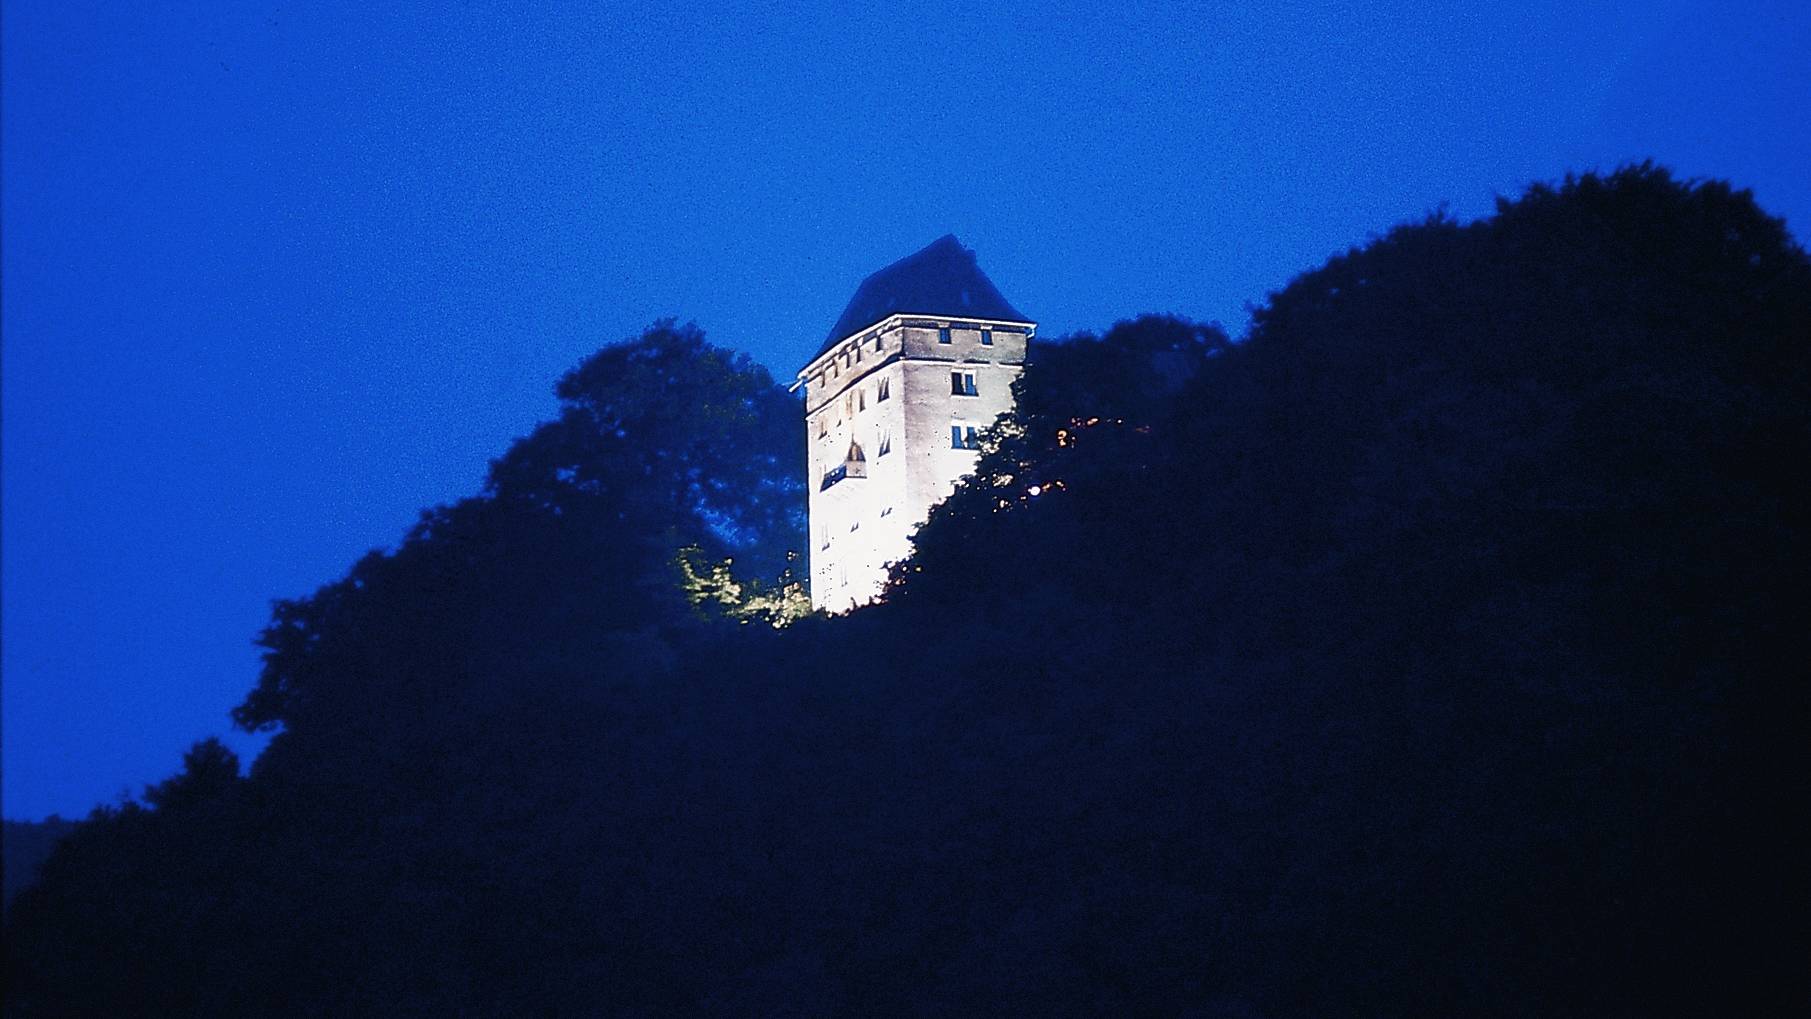  Schloß Neuburg bei Nacht 